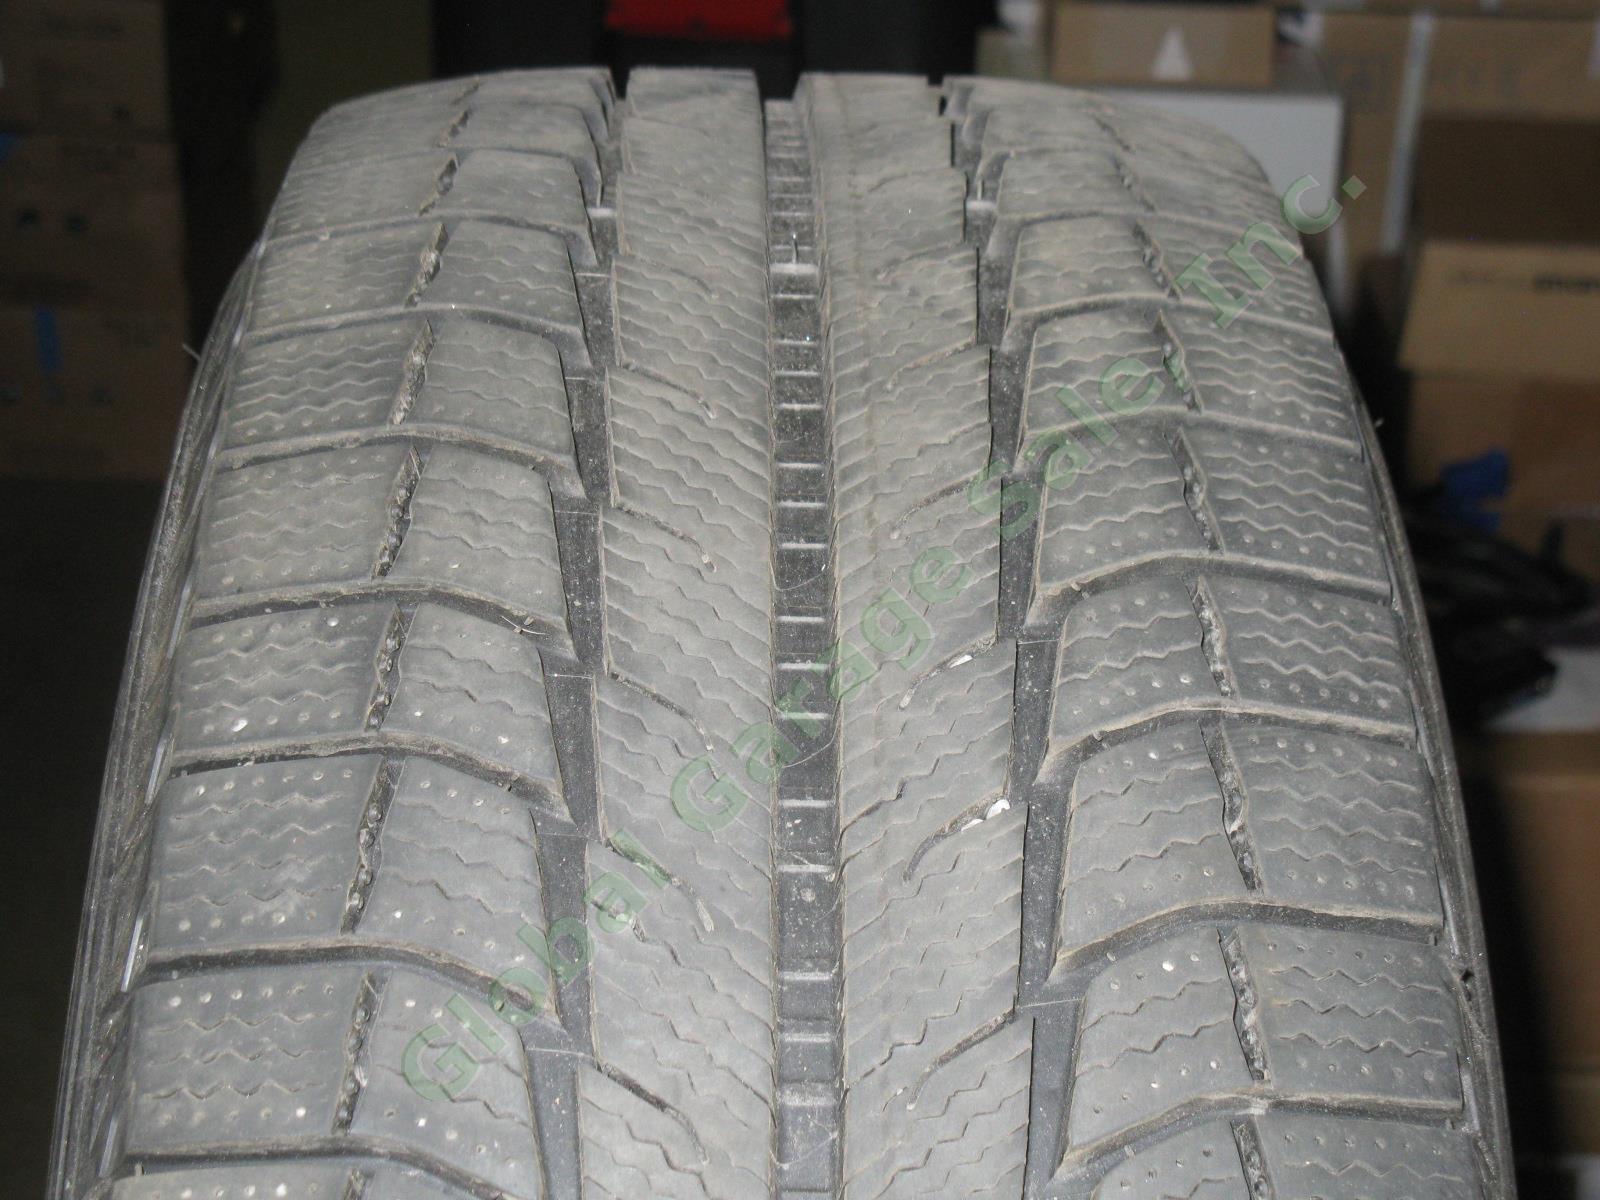 4 Michelin Latitude 18" X-Ice M+S Mud Snow Tires 235/60/R18 Acura RDX 8/32" EXC! 4